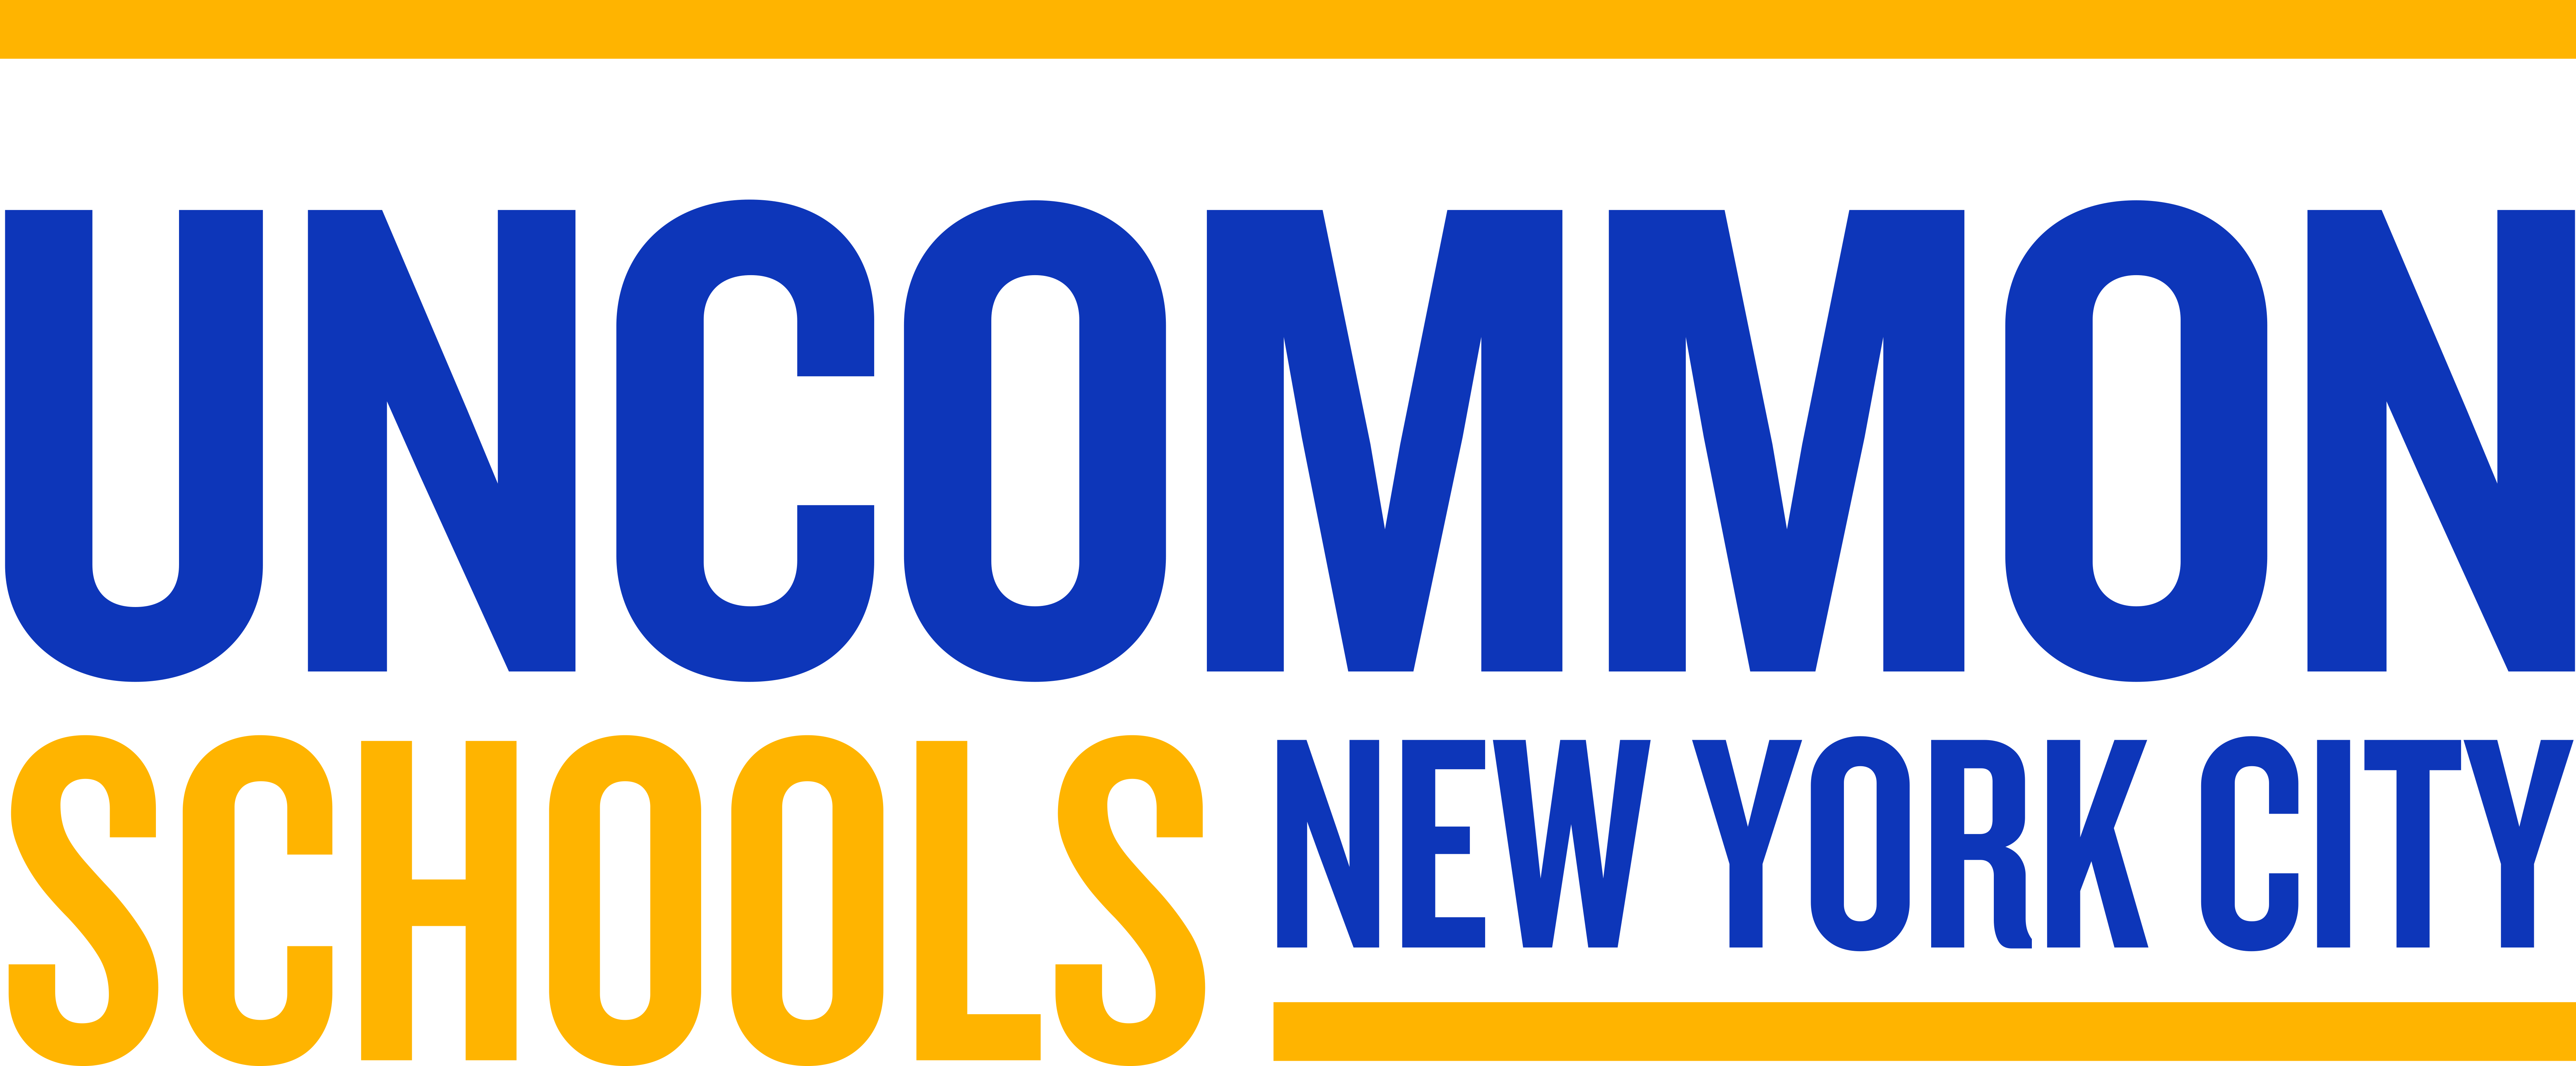 Uncommon Schools New York City Logo